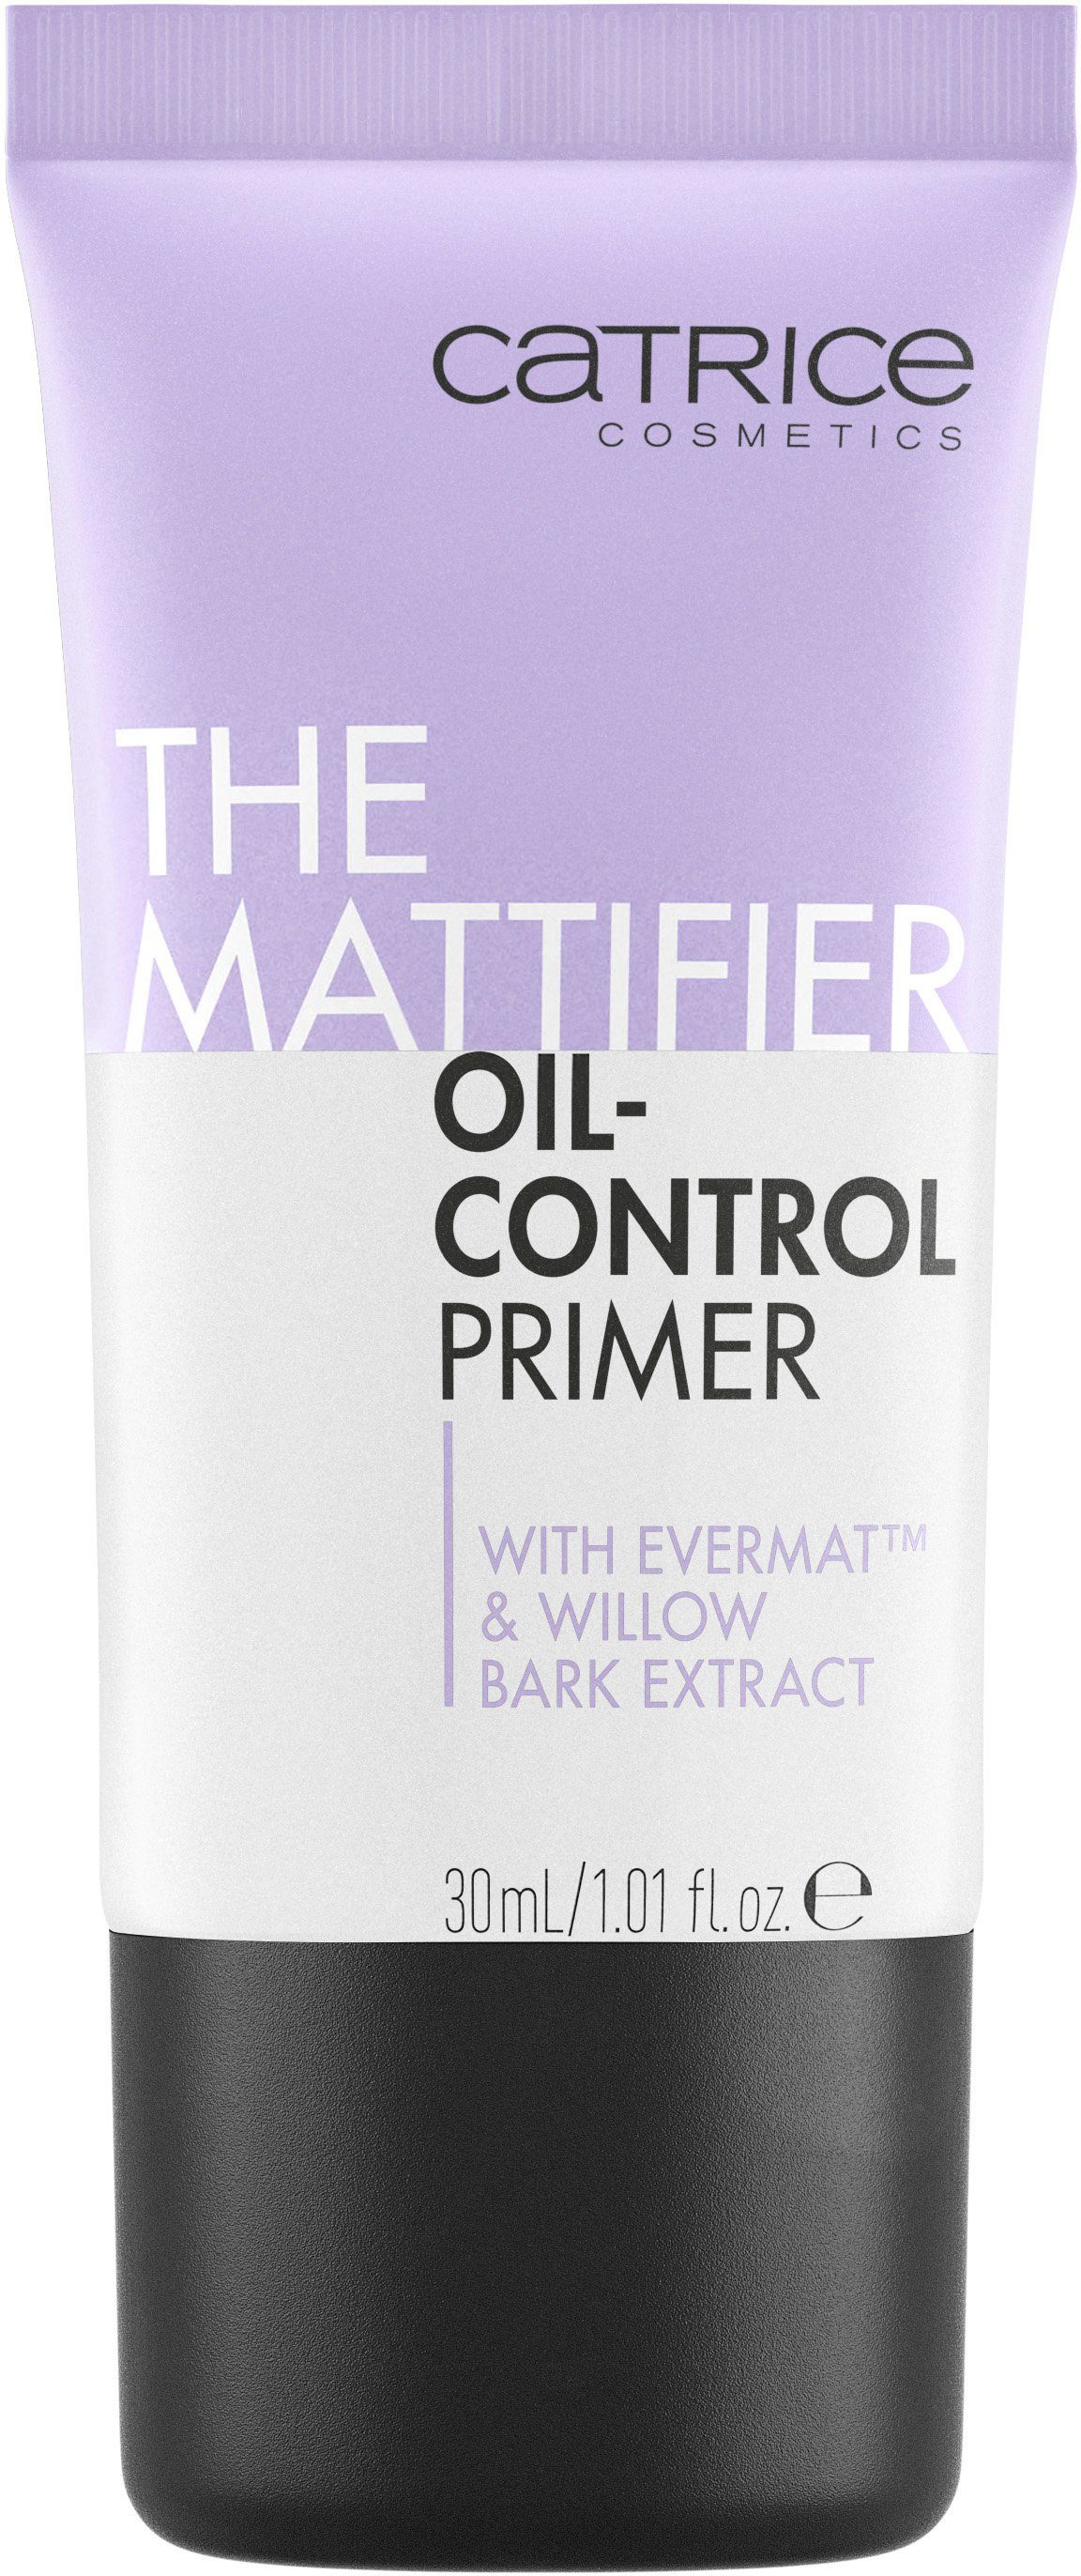 Mattifier The 3-tlg. Primer Primer, Oil-Control Catrice